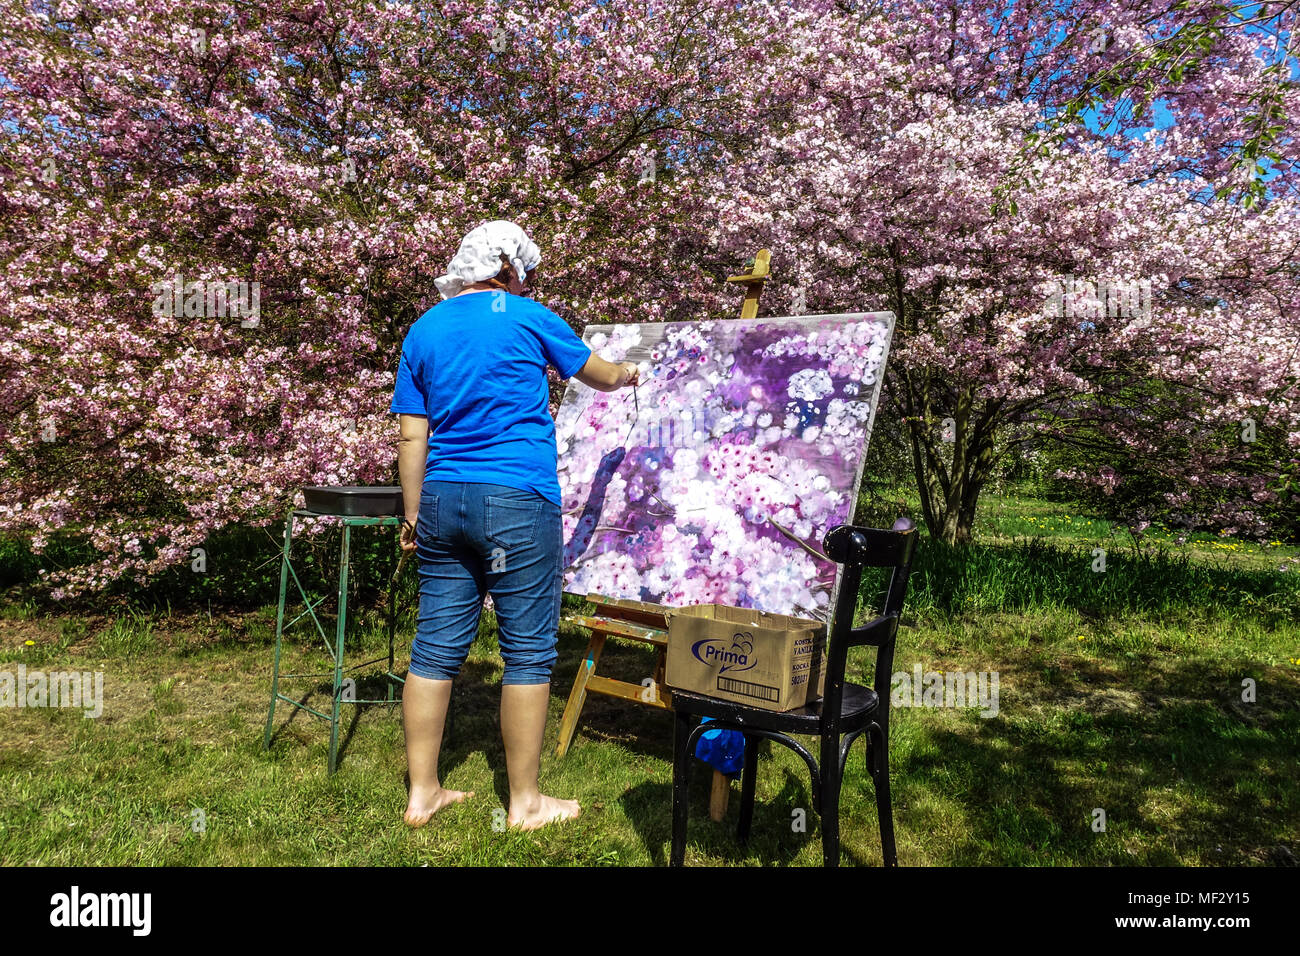 Une femme d'avoir une vue d'blossoming cherry trees in a garden Banque D'Images